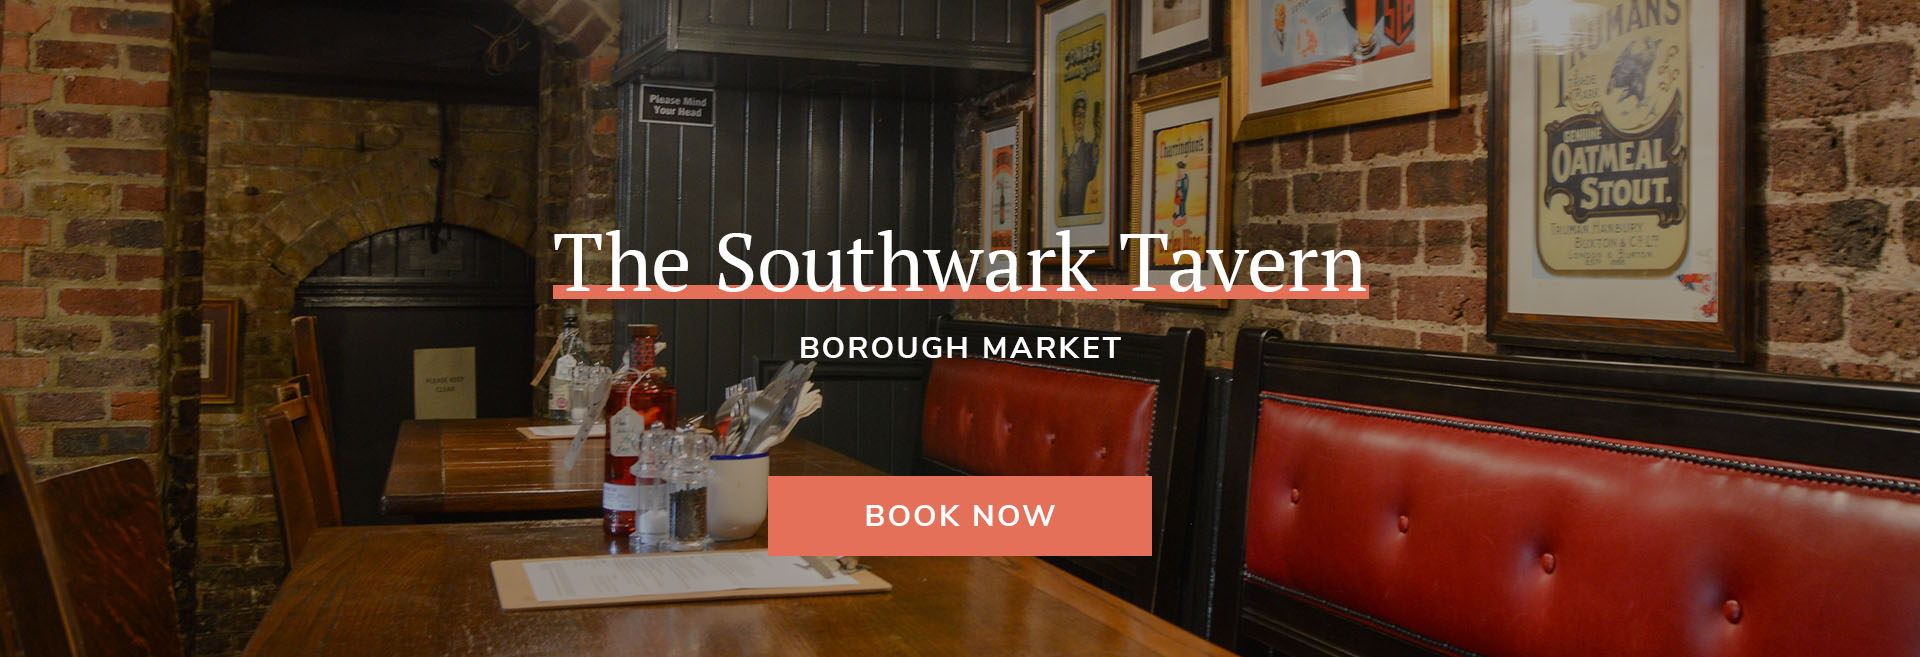 The Southwark Tavern Banner 3